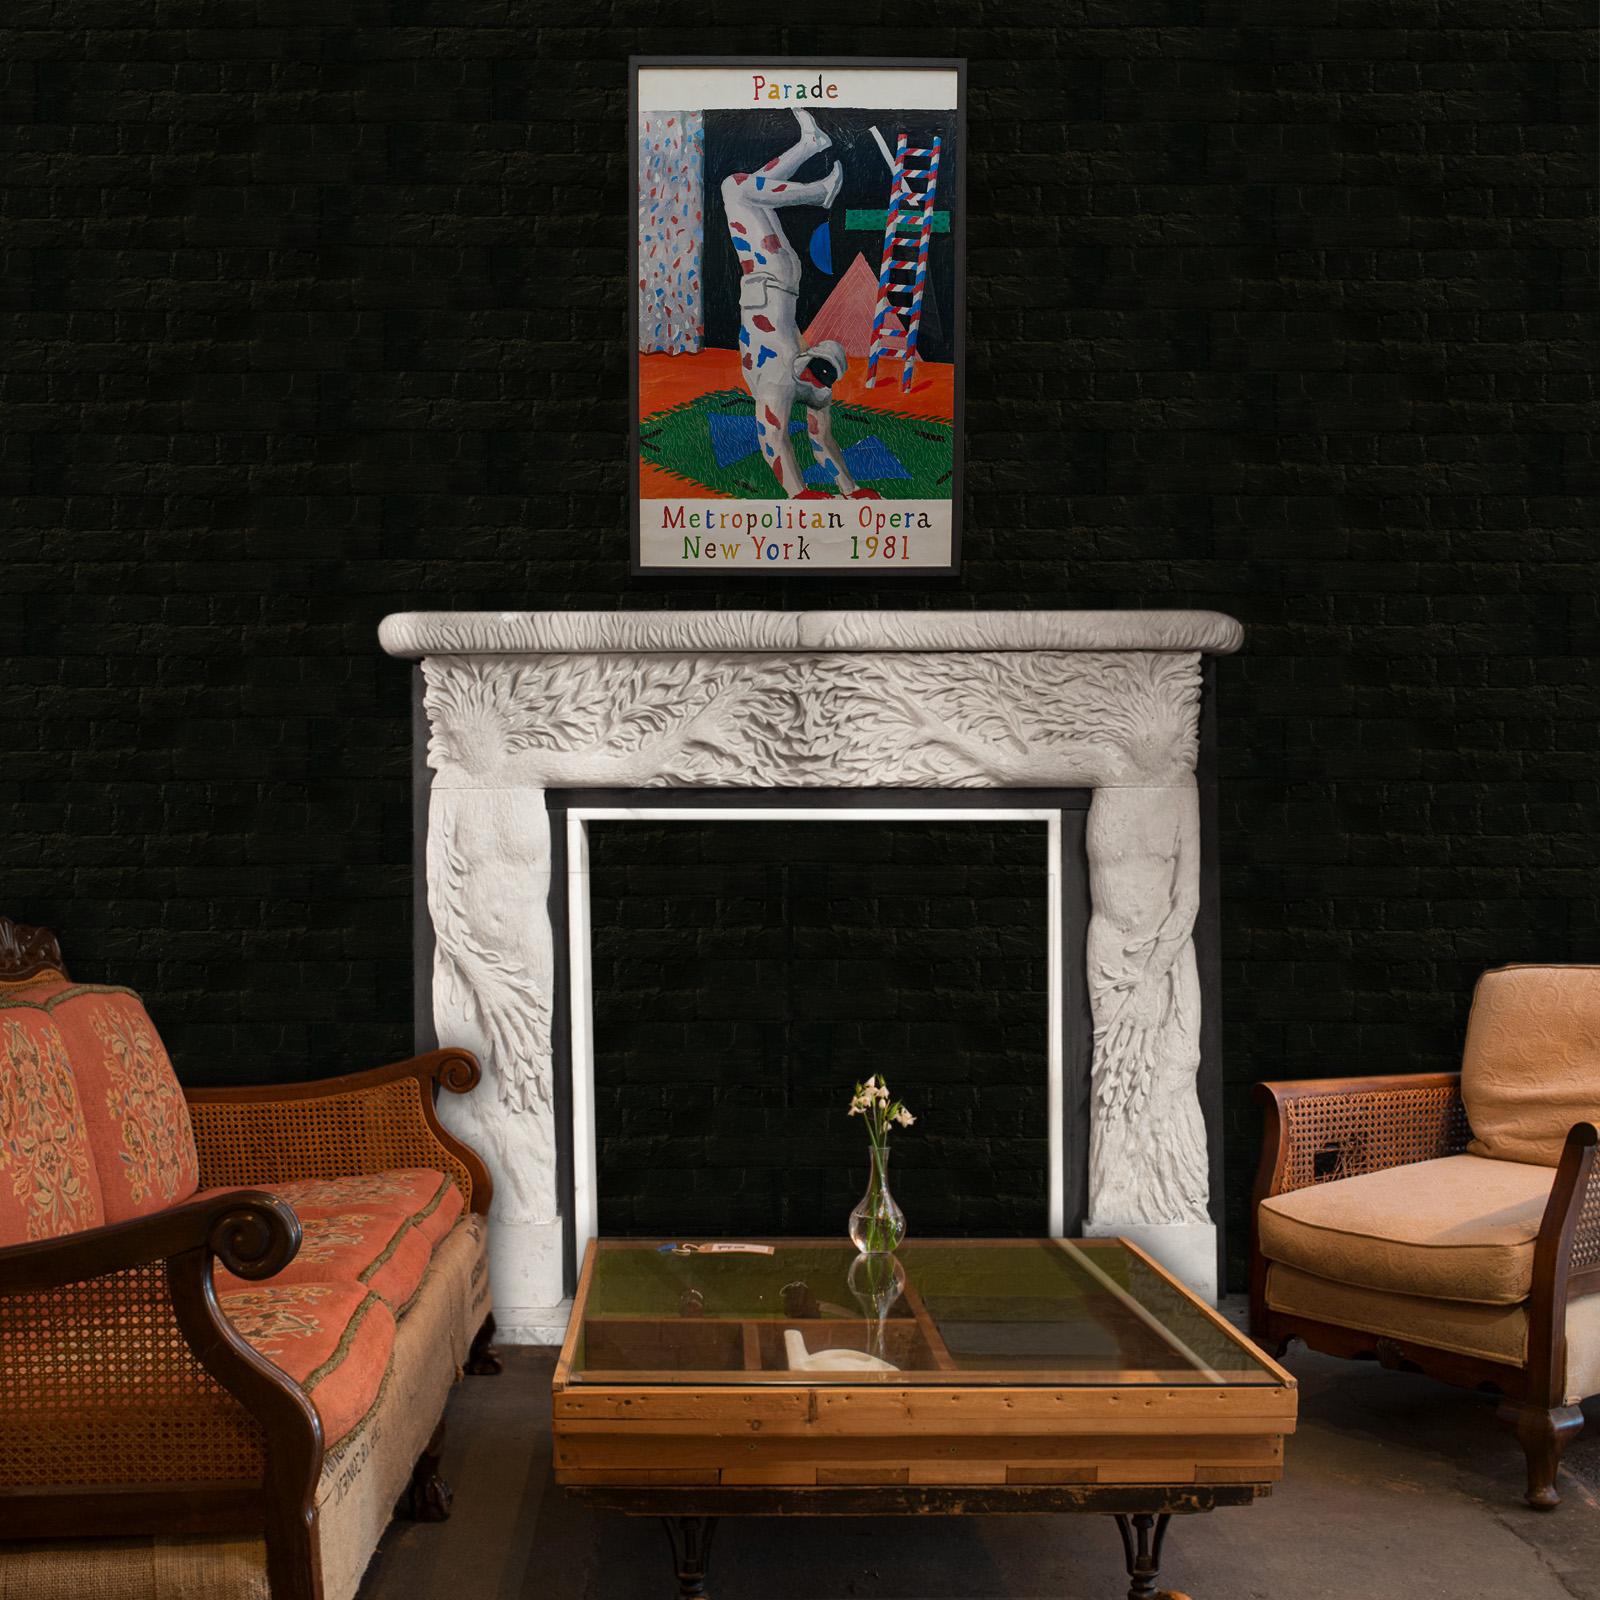 Glass Framed, Vintage David Hockney Poster, American, Parade, Met Opera, New York